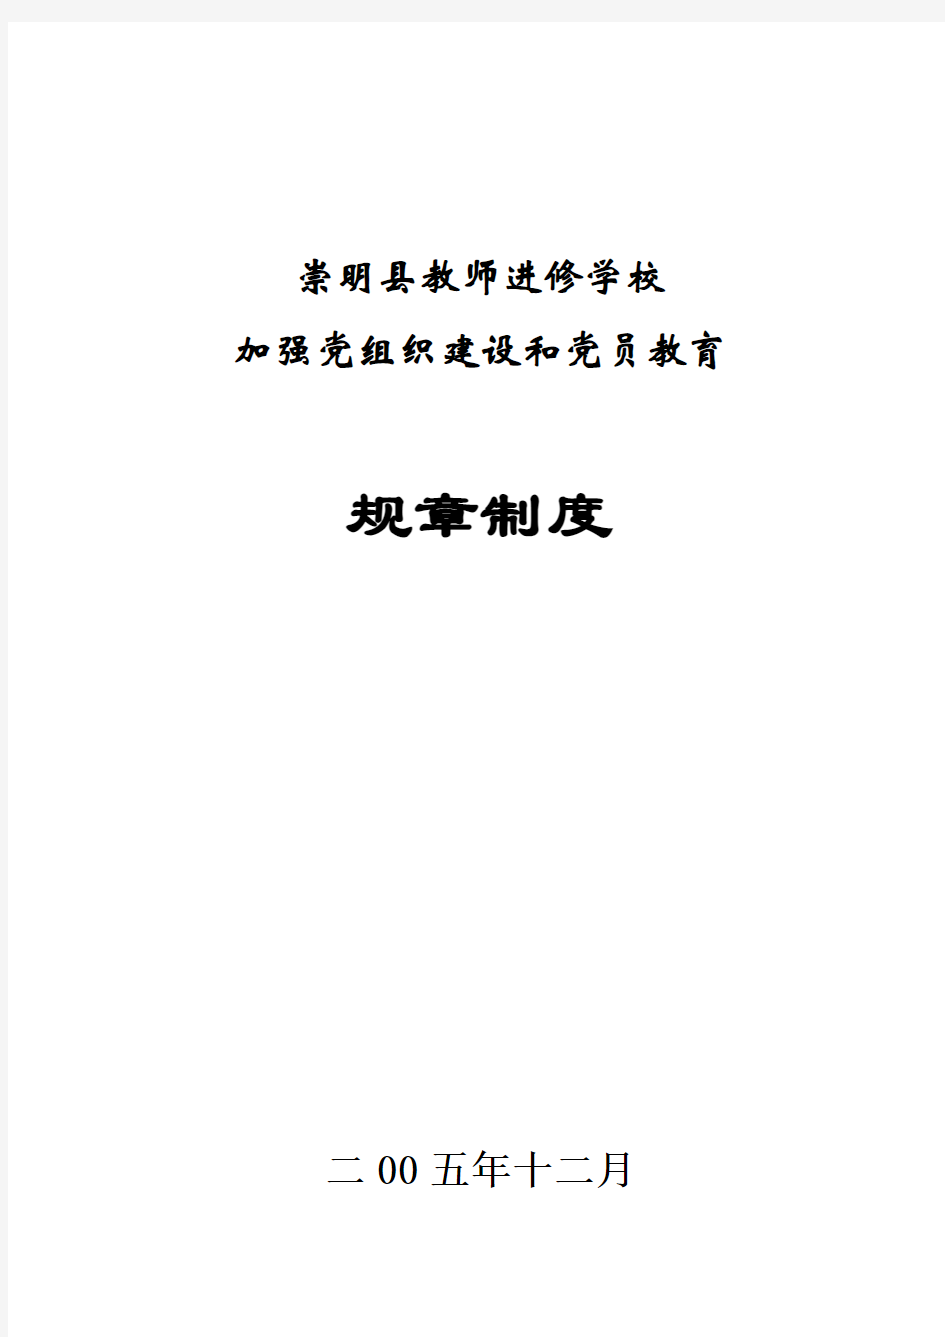 明县教师进修学校加强党组织建设和党员教育规章制度.